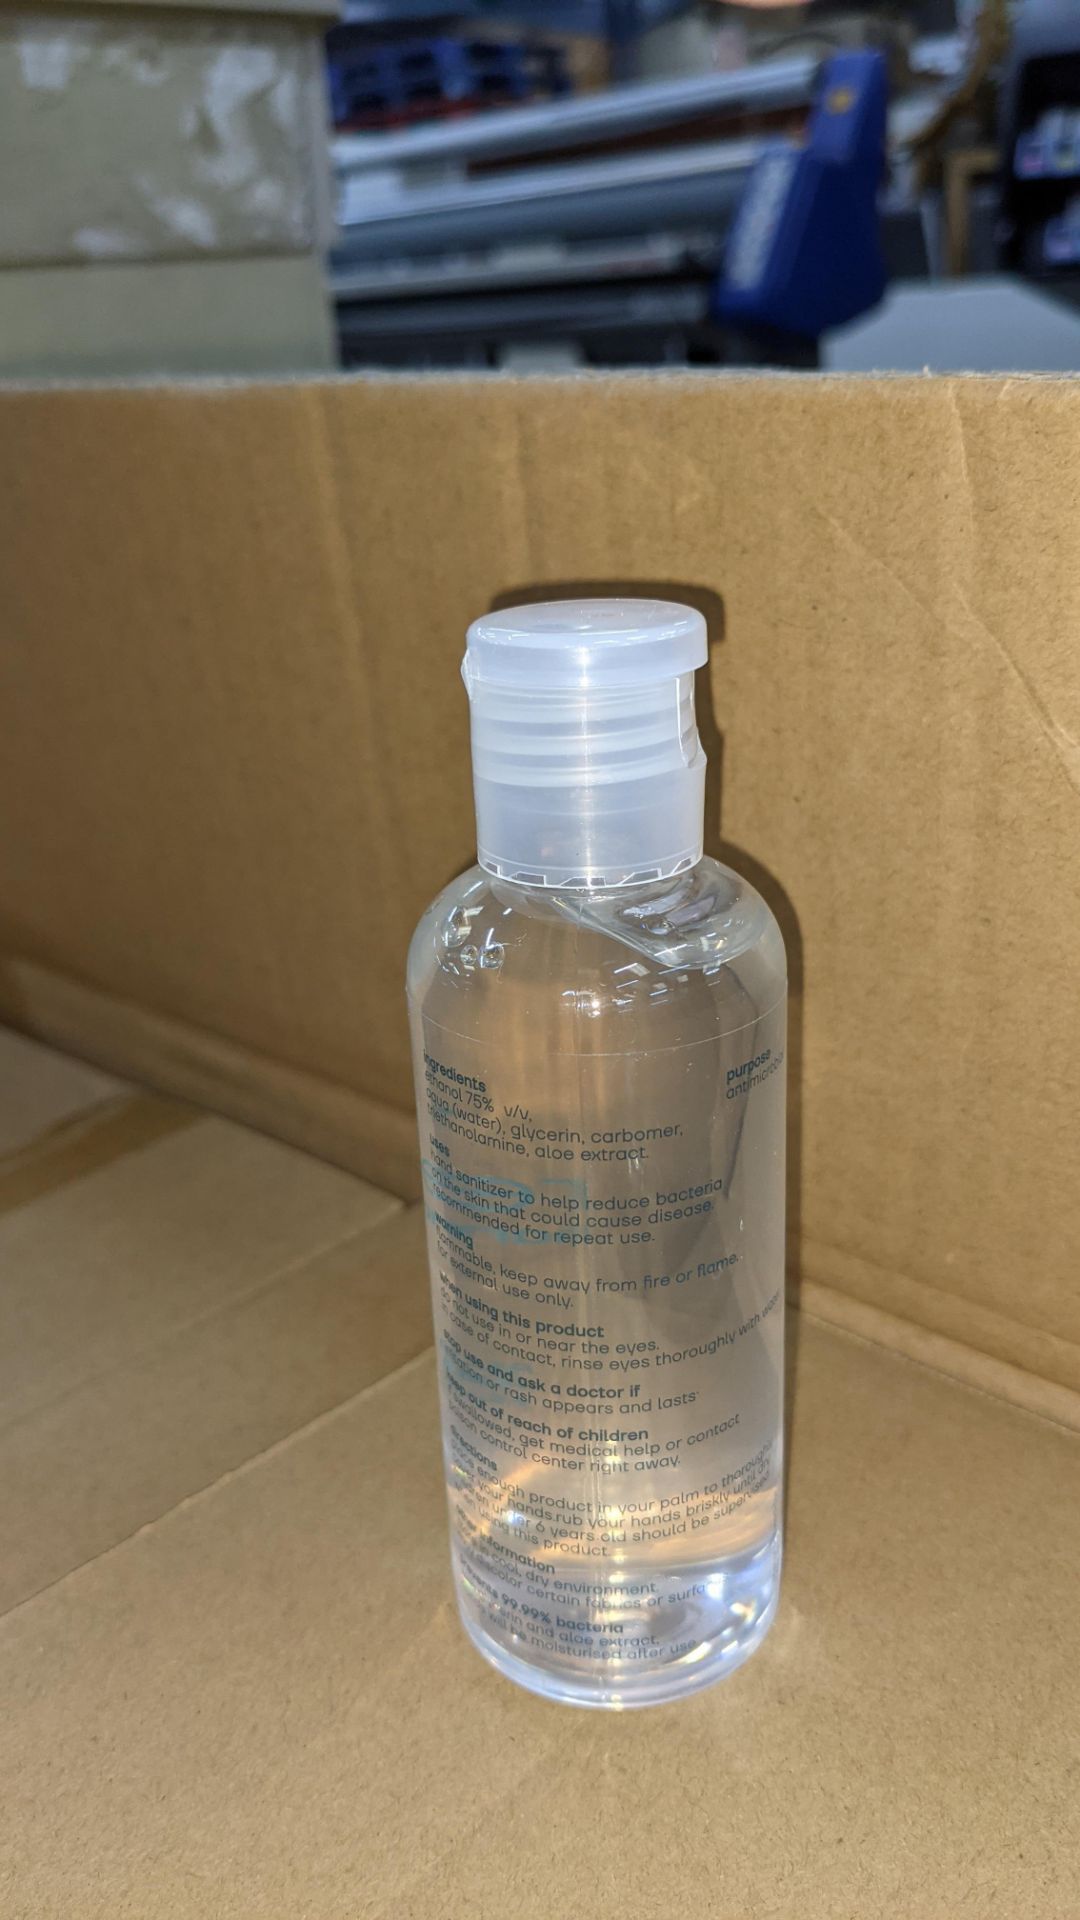 572 off 100ml bottles of hand sanitiser each containing Aloe Vera antibacterial moisturiser. 75% et - Image 5 of 7